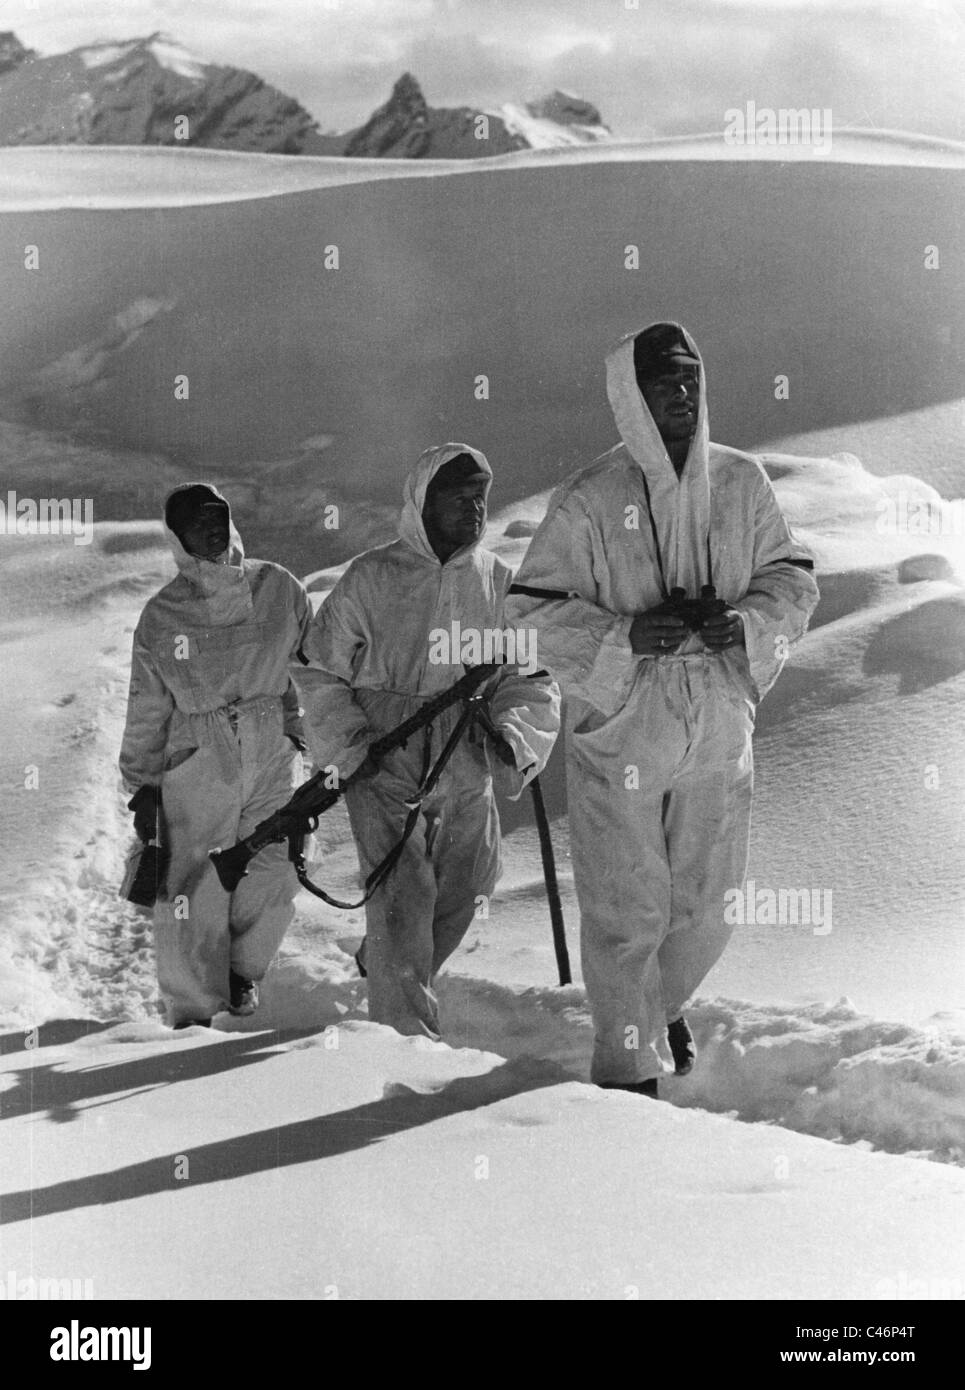 Des soldats dans les montagnes du Caucase, pendant la Seconde Guerre mondiale, 1942 (photo n/b) Banque D'Images